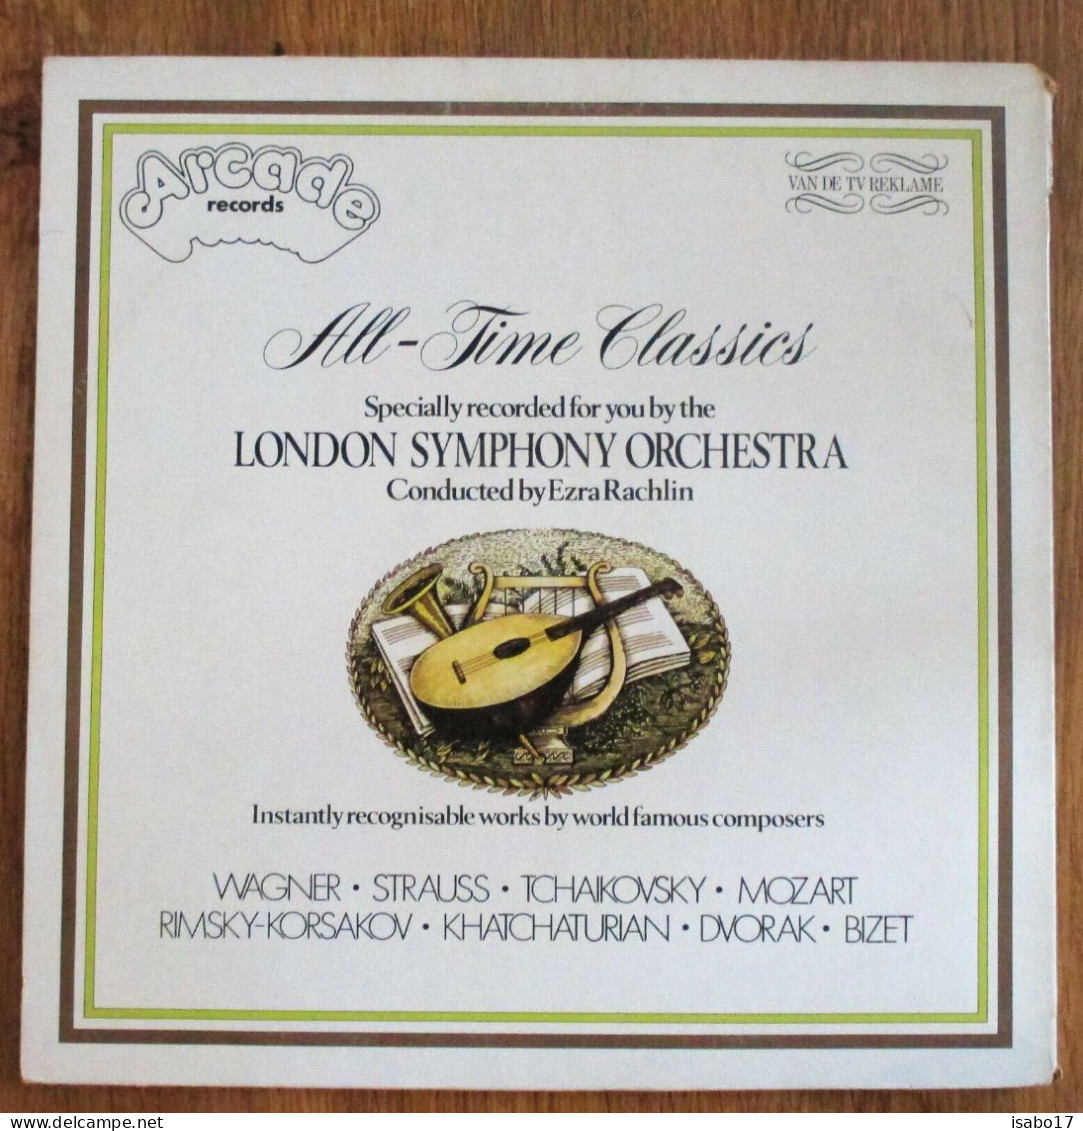 All-Time Classics [Vinyl LP] - Opera